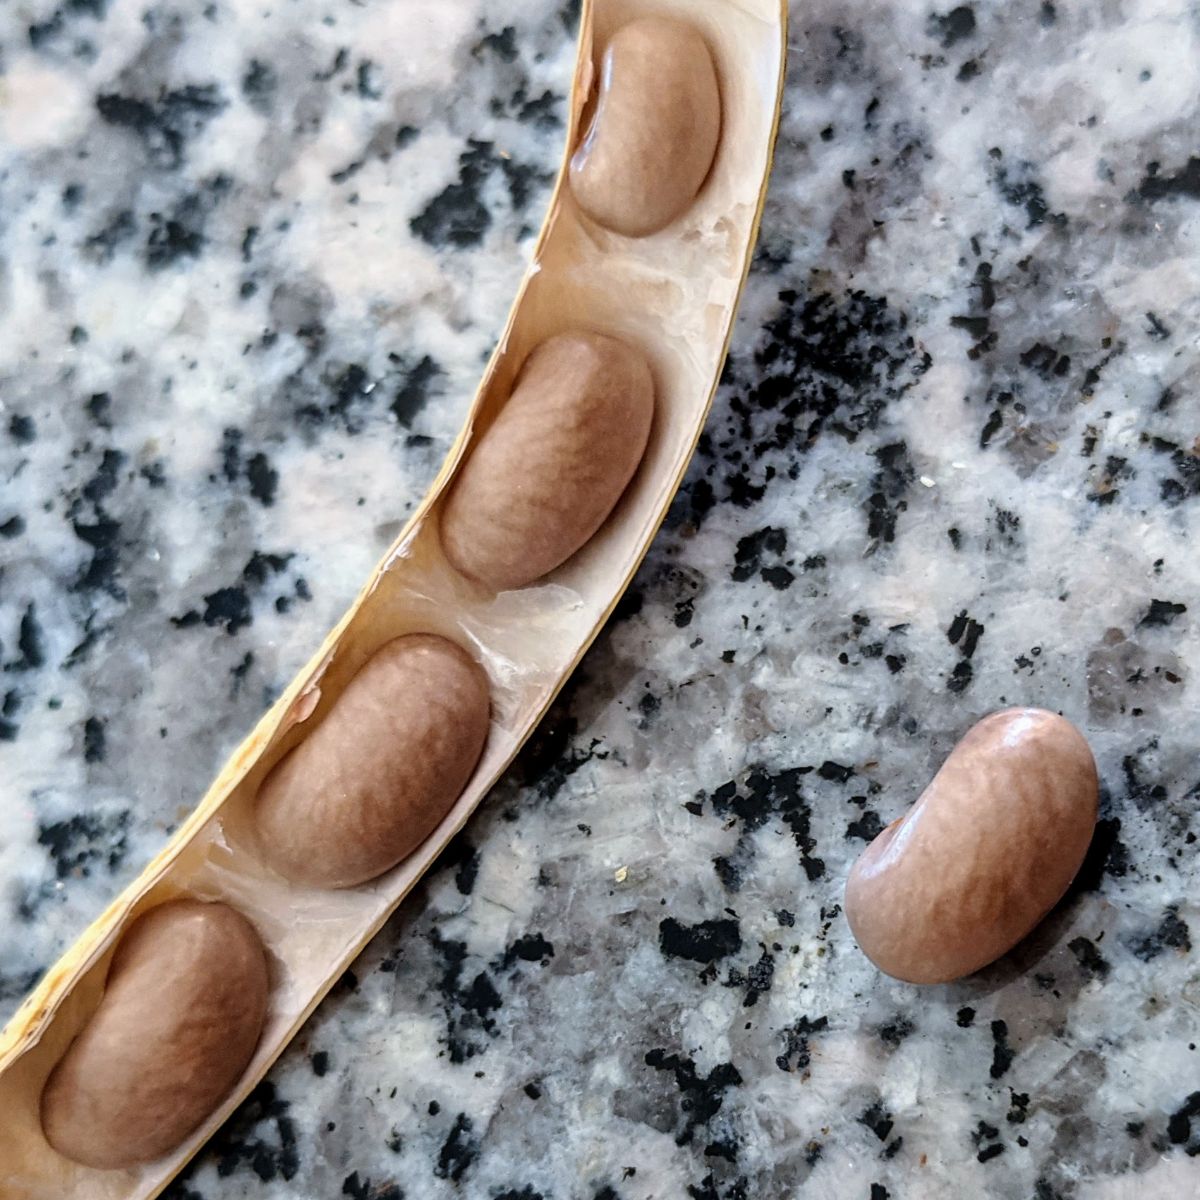 Open pod full of bean seeds on a granite table